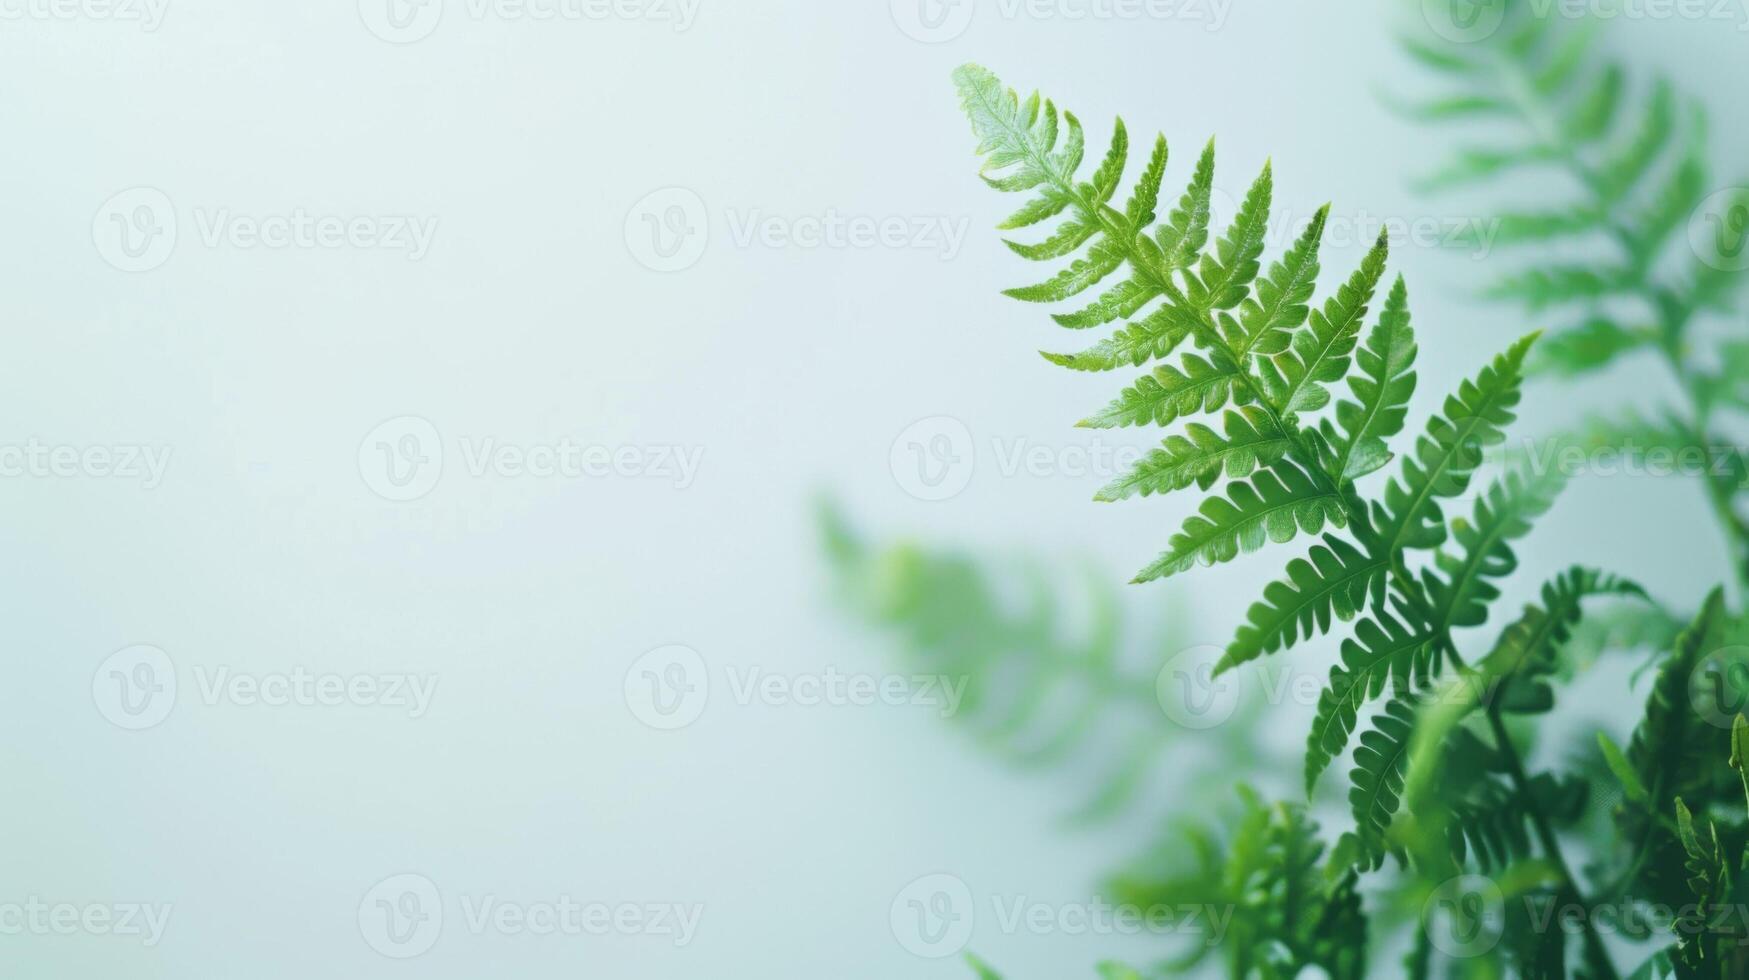 de cerca de un verde helecho planta con intrincado hoja detalles y vibrante follaje en naturaleza foto